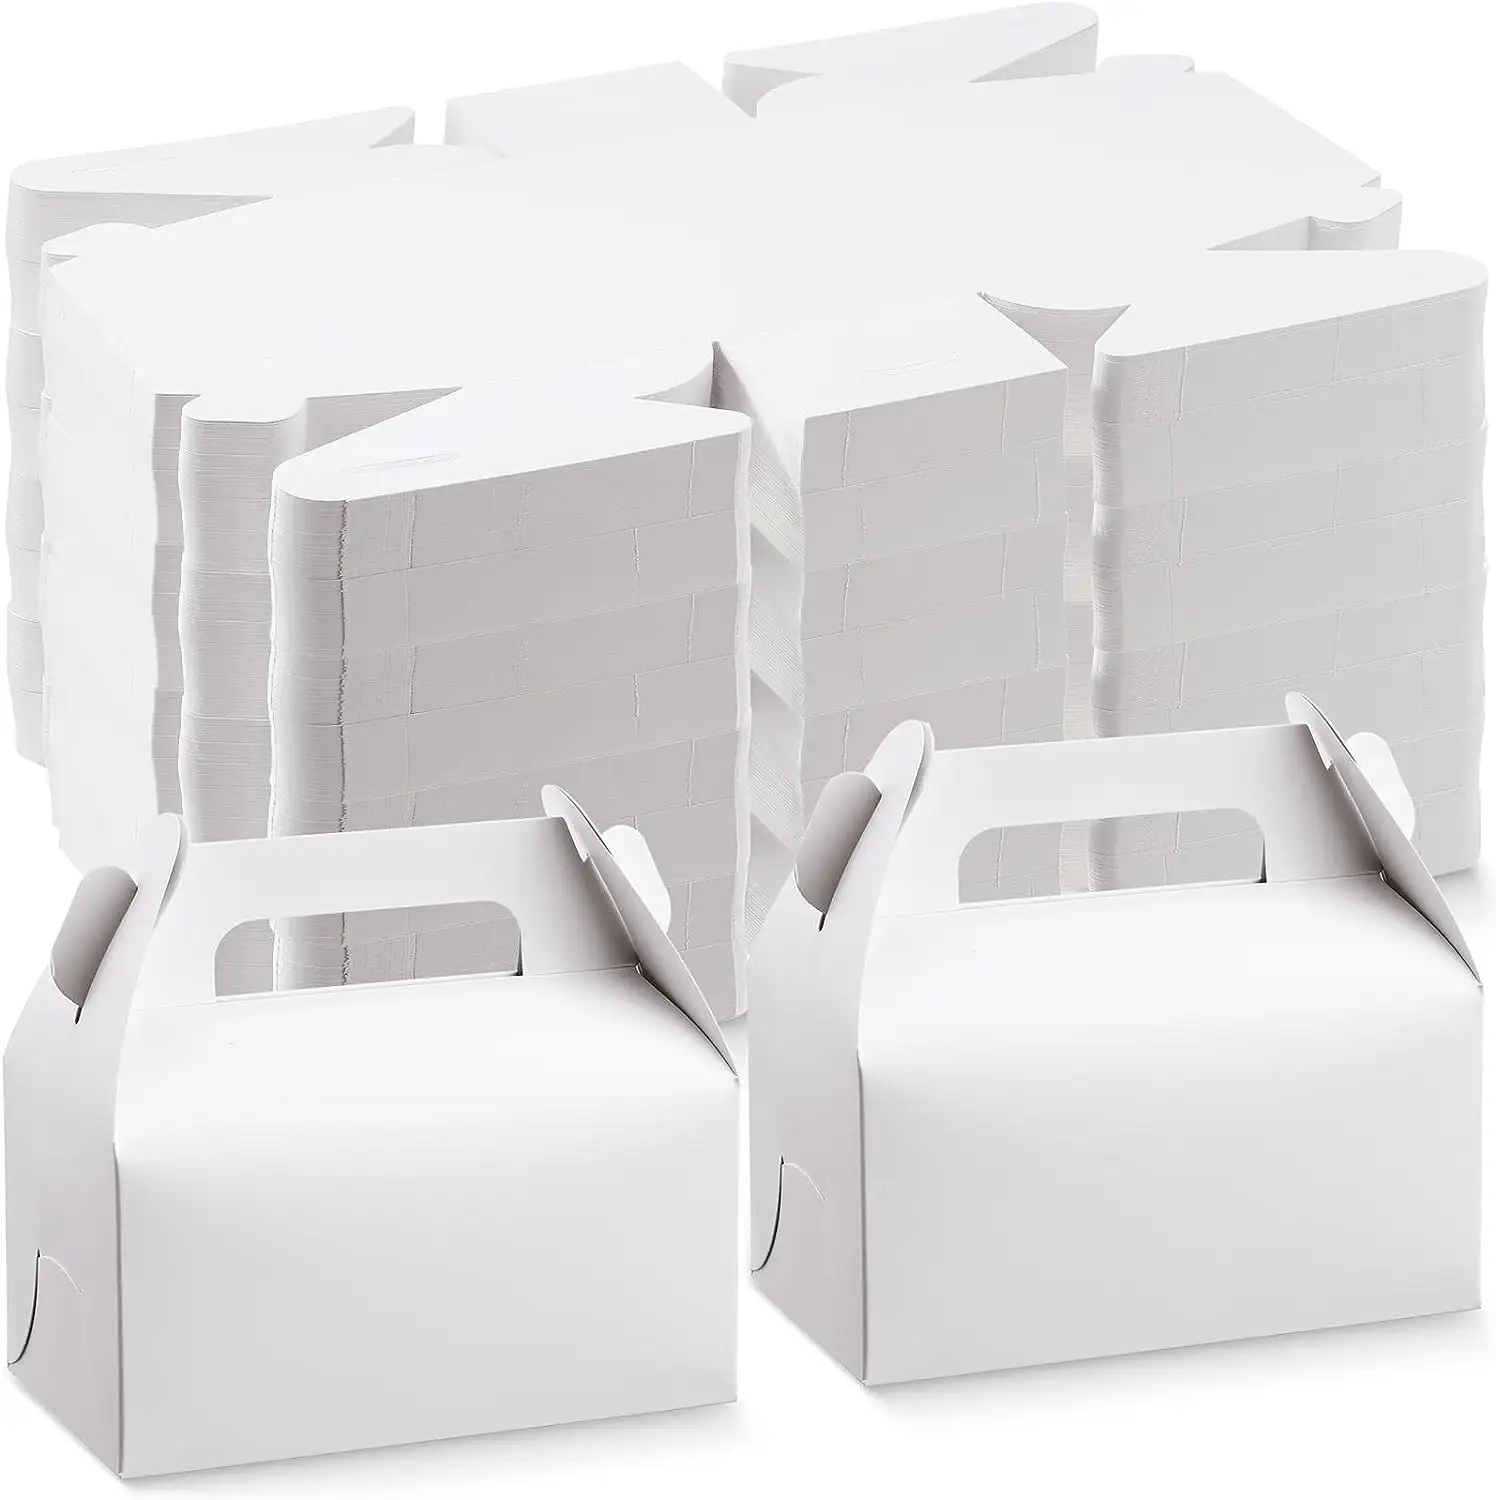 10 adet DIY işçiliği küp mevcut düğün doğum günü partisi boş Gable kutuları Goodies kutusu kağıt hediye Wrap kek CandyBox